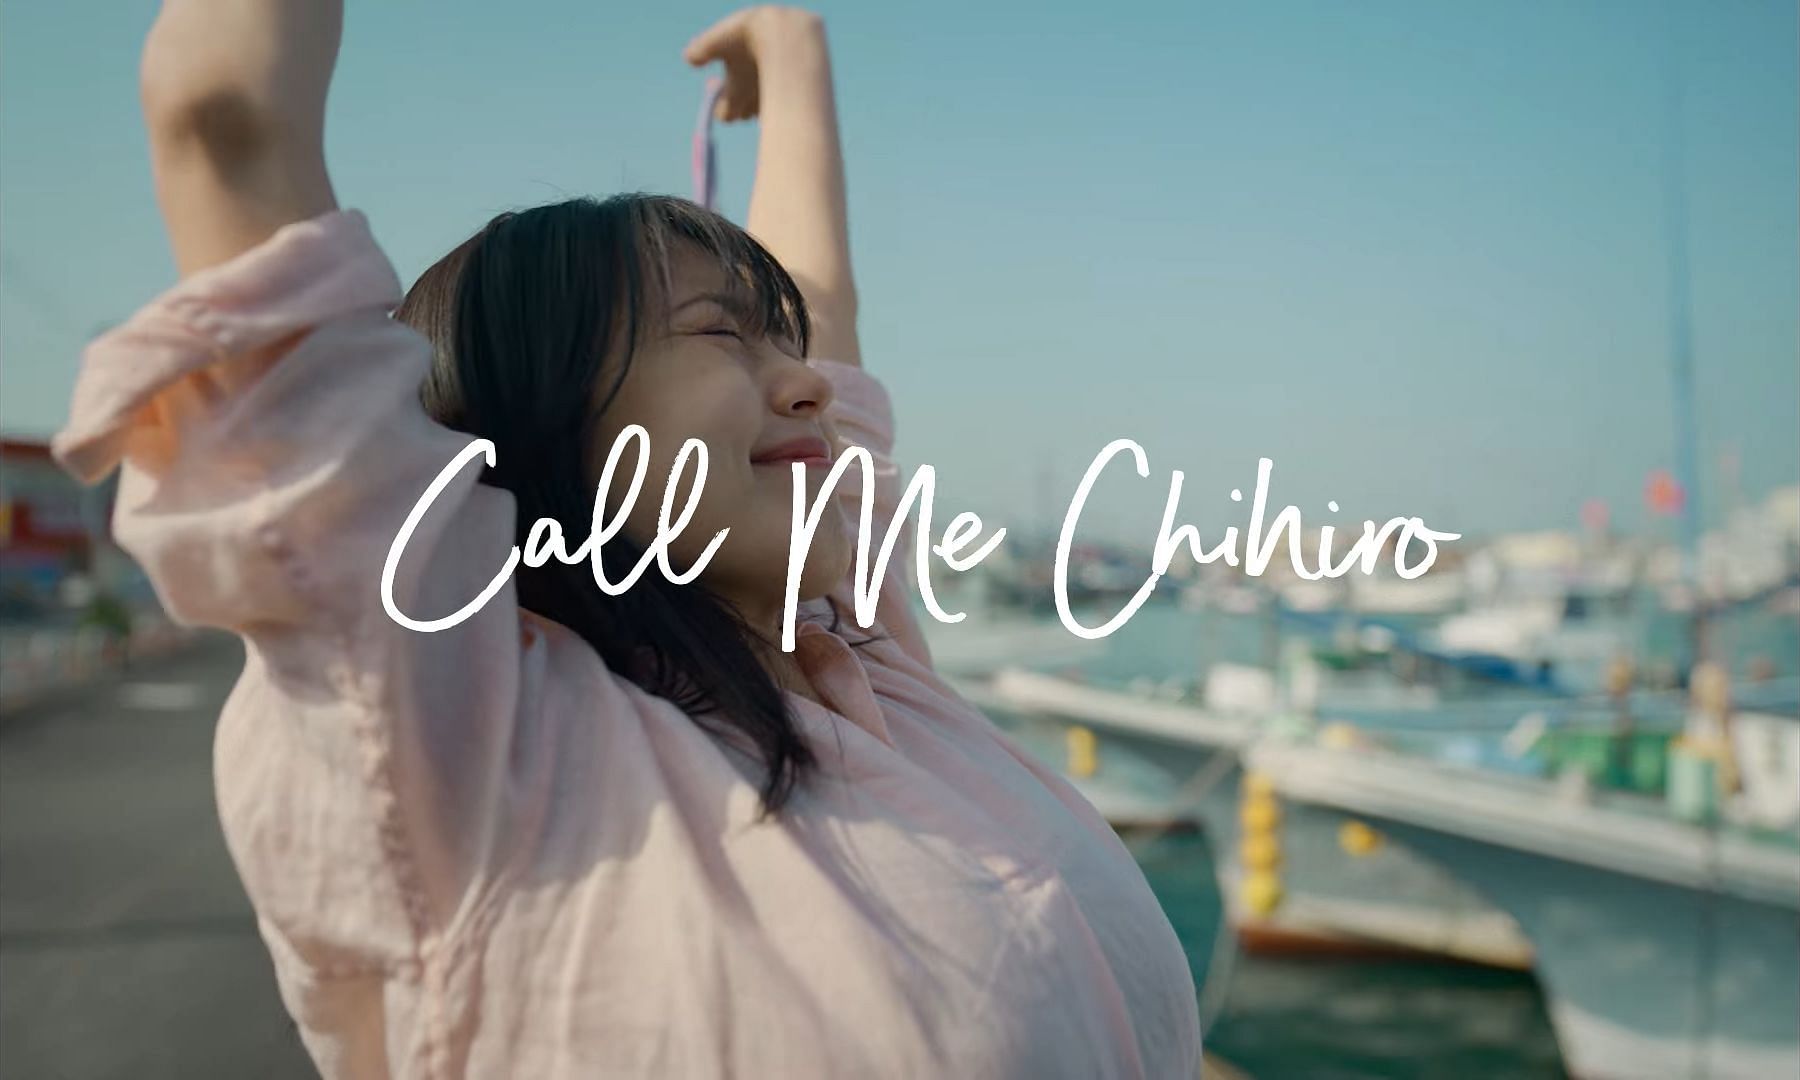 Call Me Chihiro (Image via Netflix)